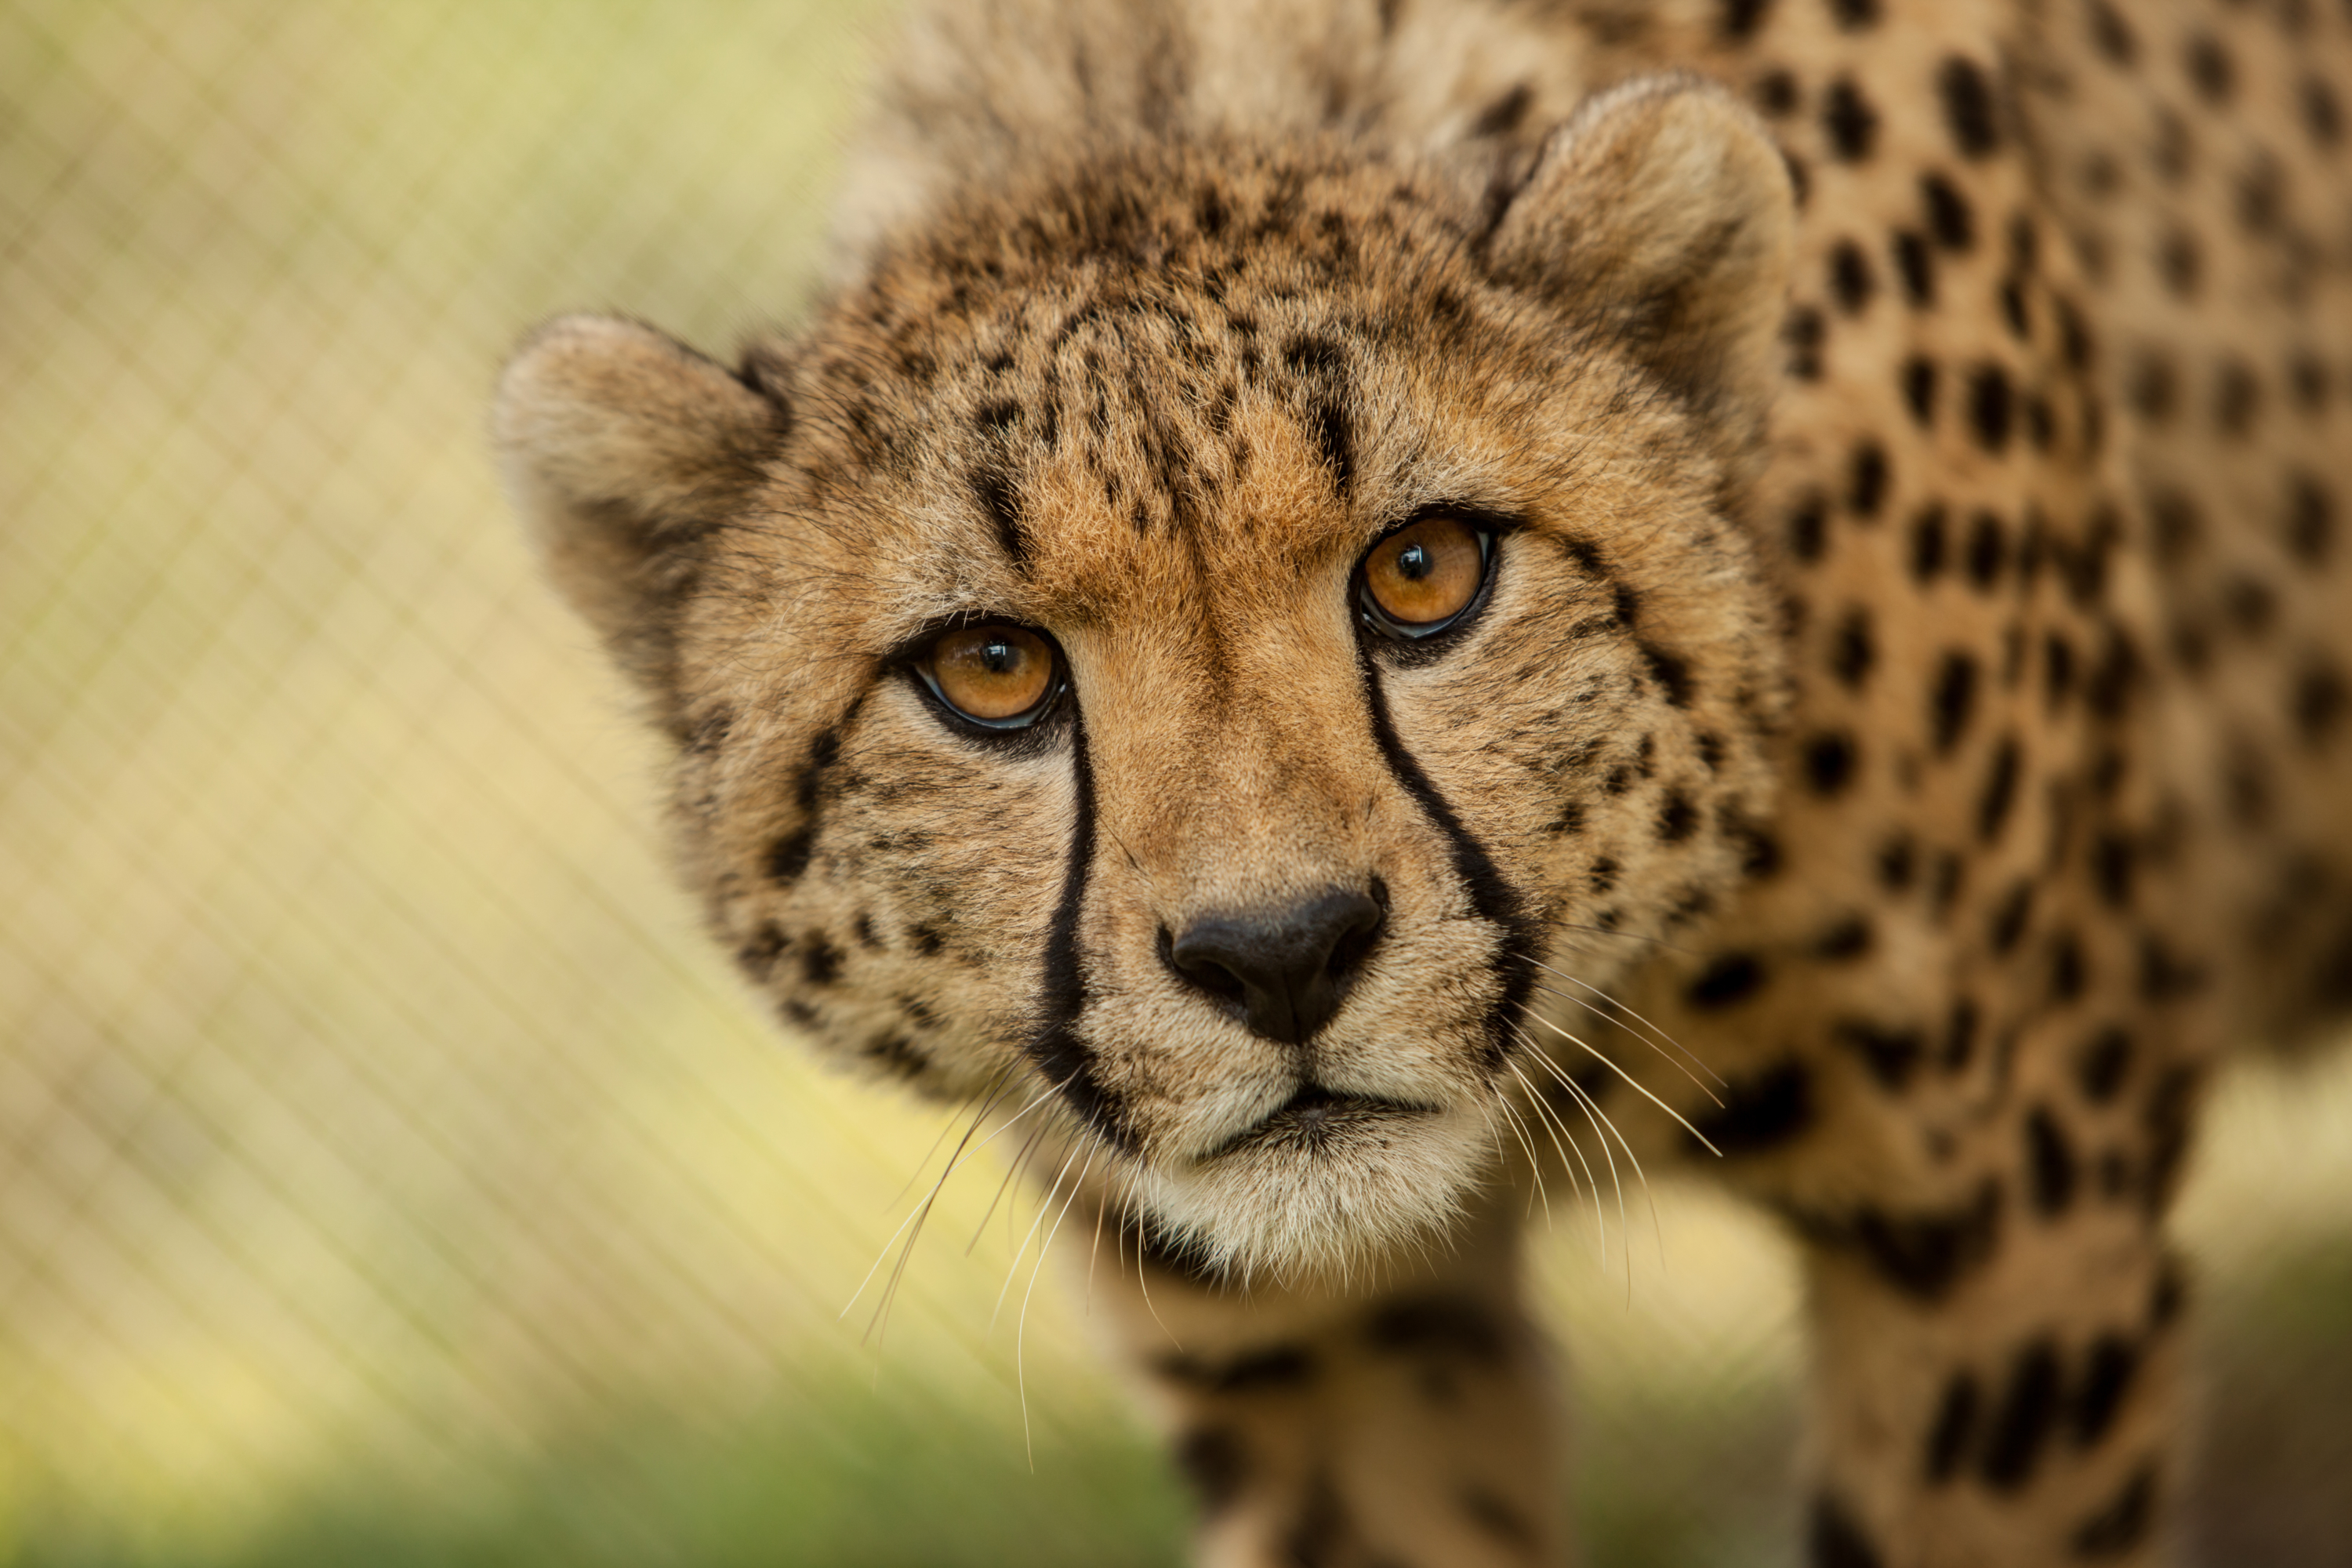 A cheetah stares back at the camera